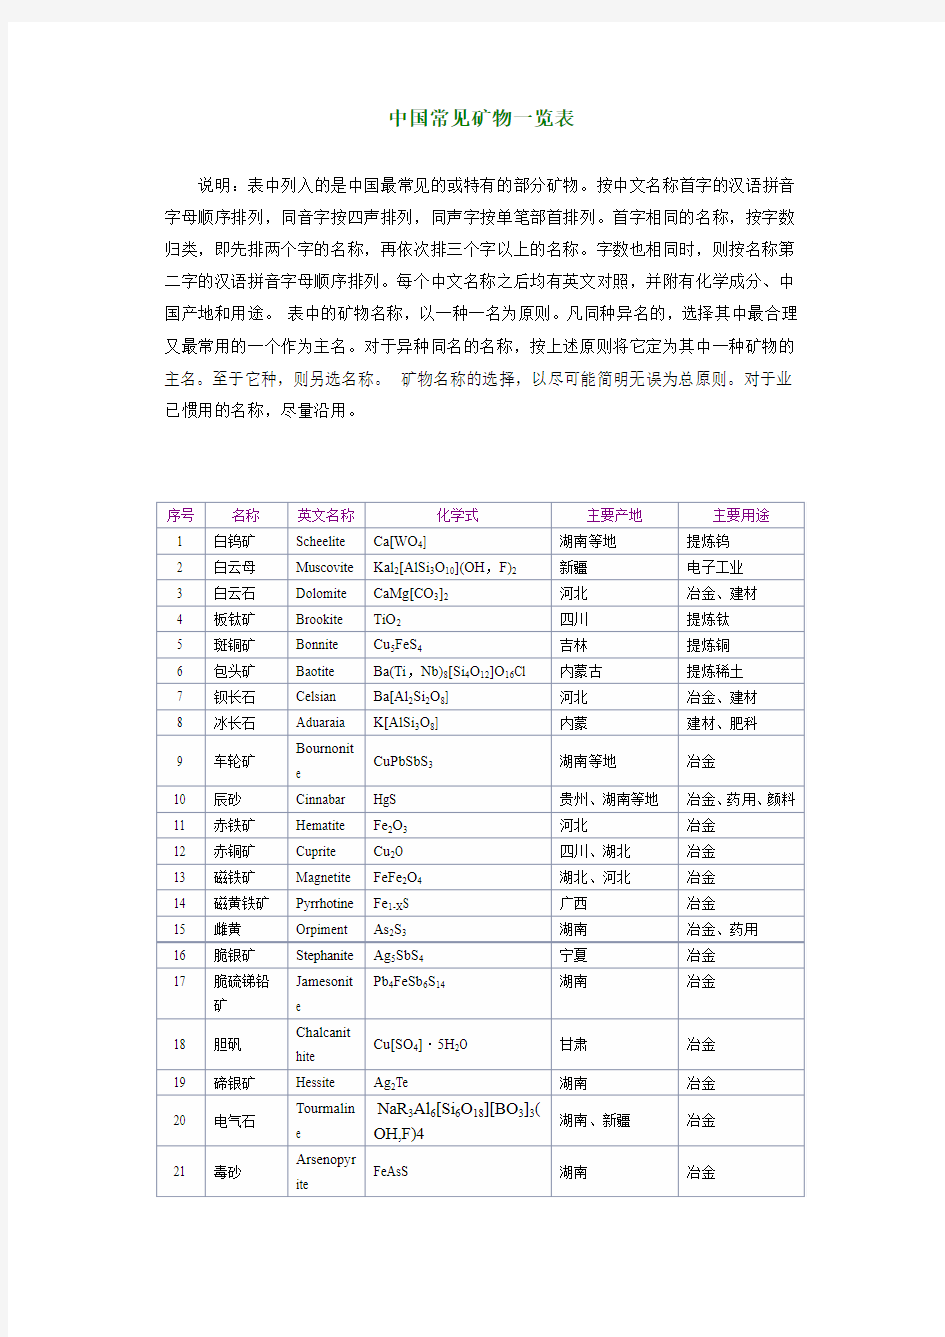 中国矿物一览表